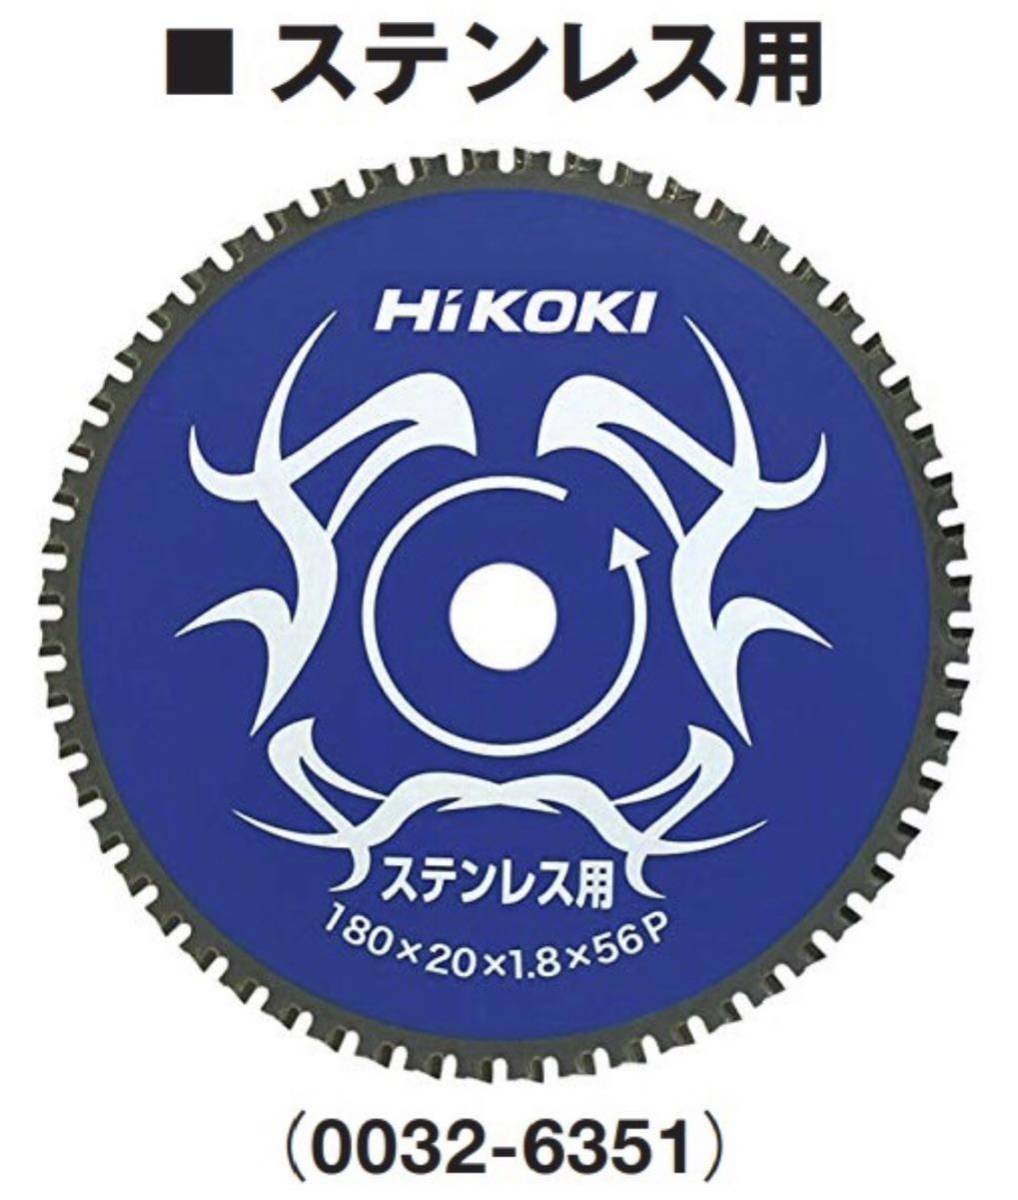 HIKOKI チップソーカッタ用チップソー 0032-6351 ス外径180mm 刃数56 取付穴径20mm CD7SA CD7専用 ハイコーキ 日立_画像3